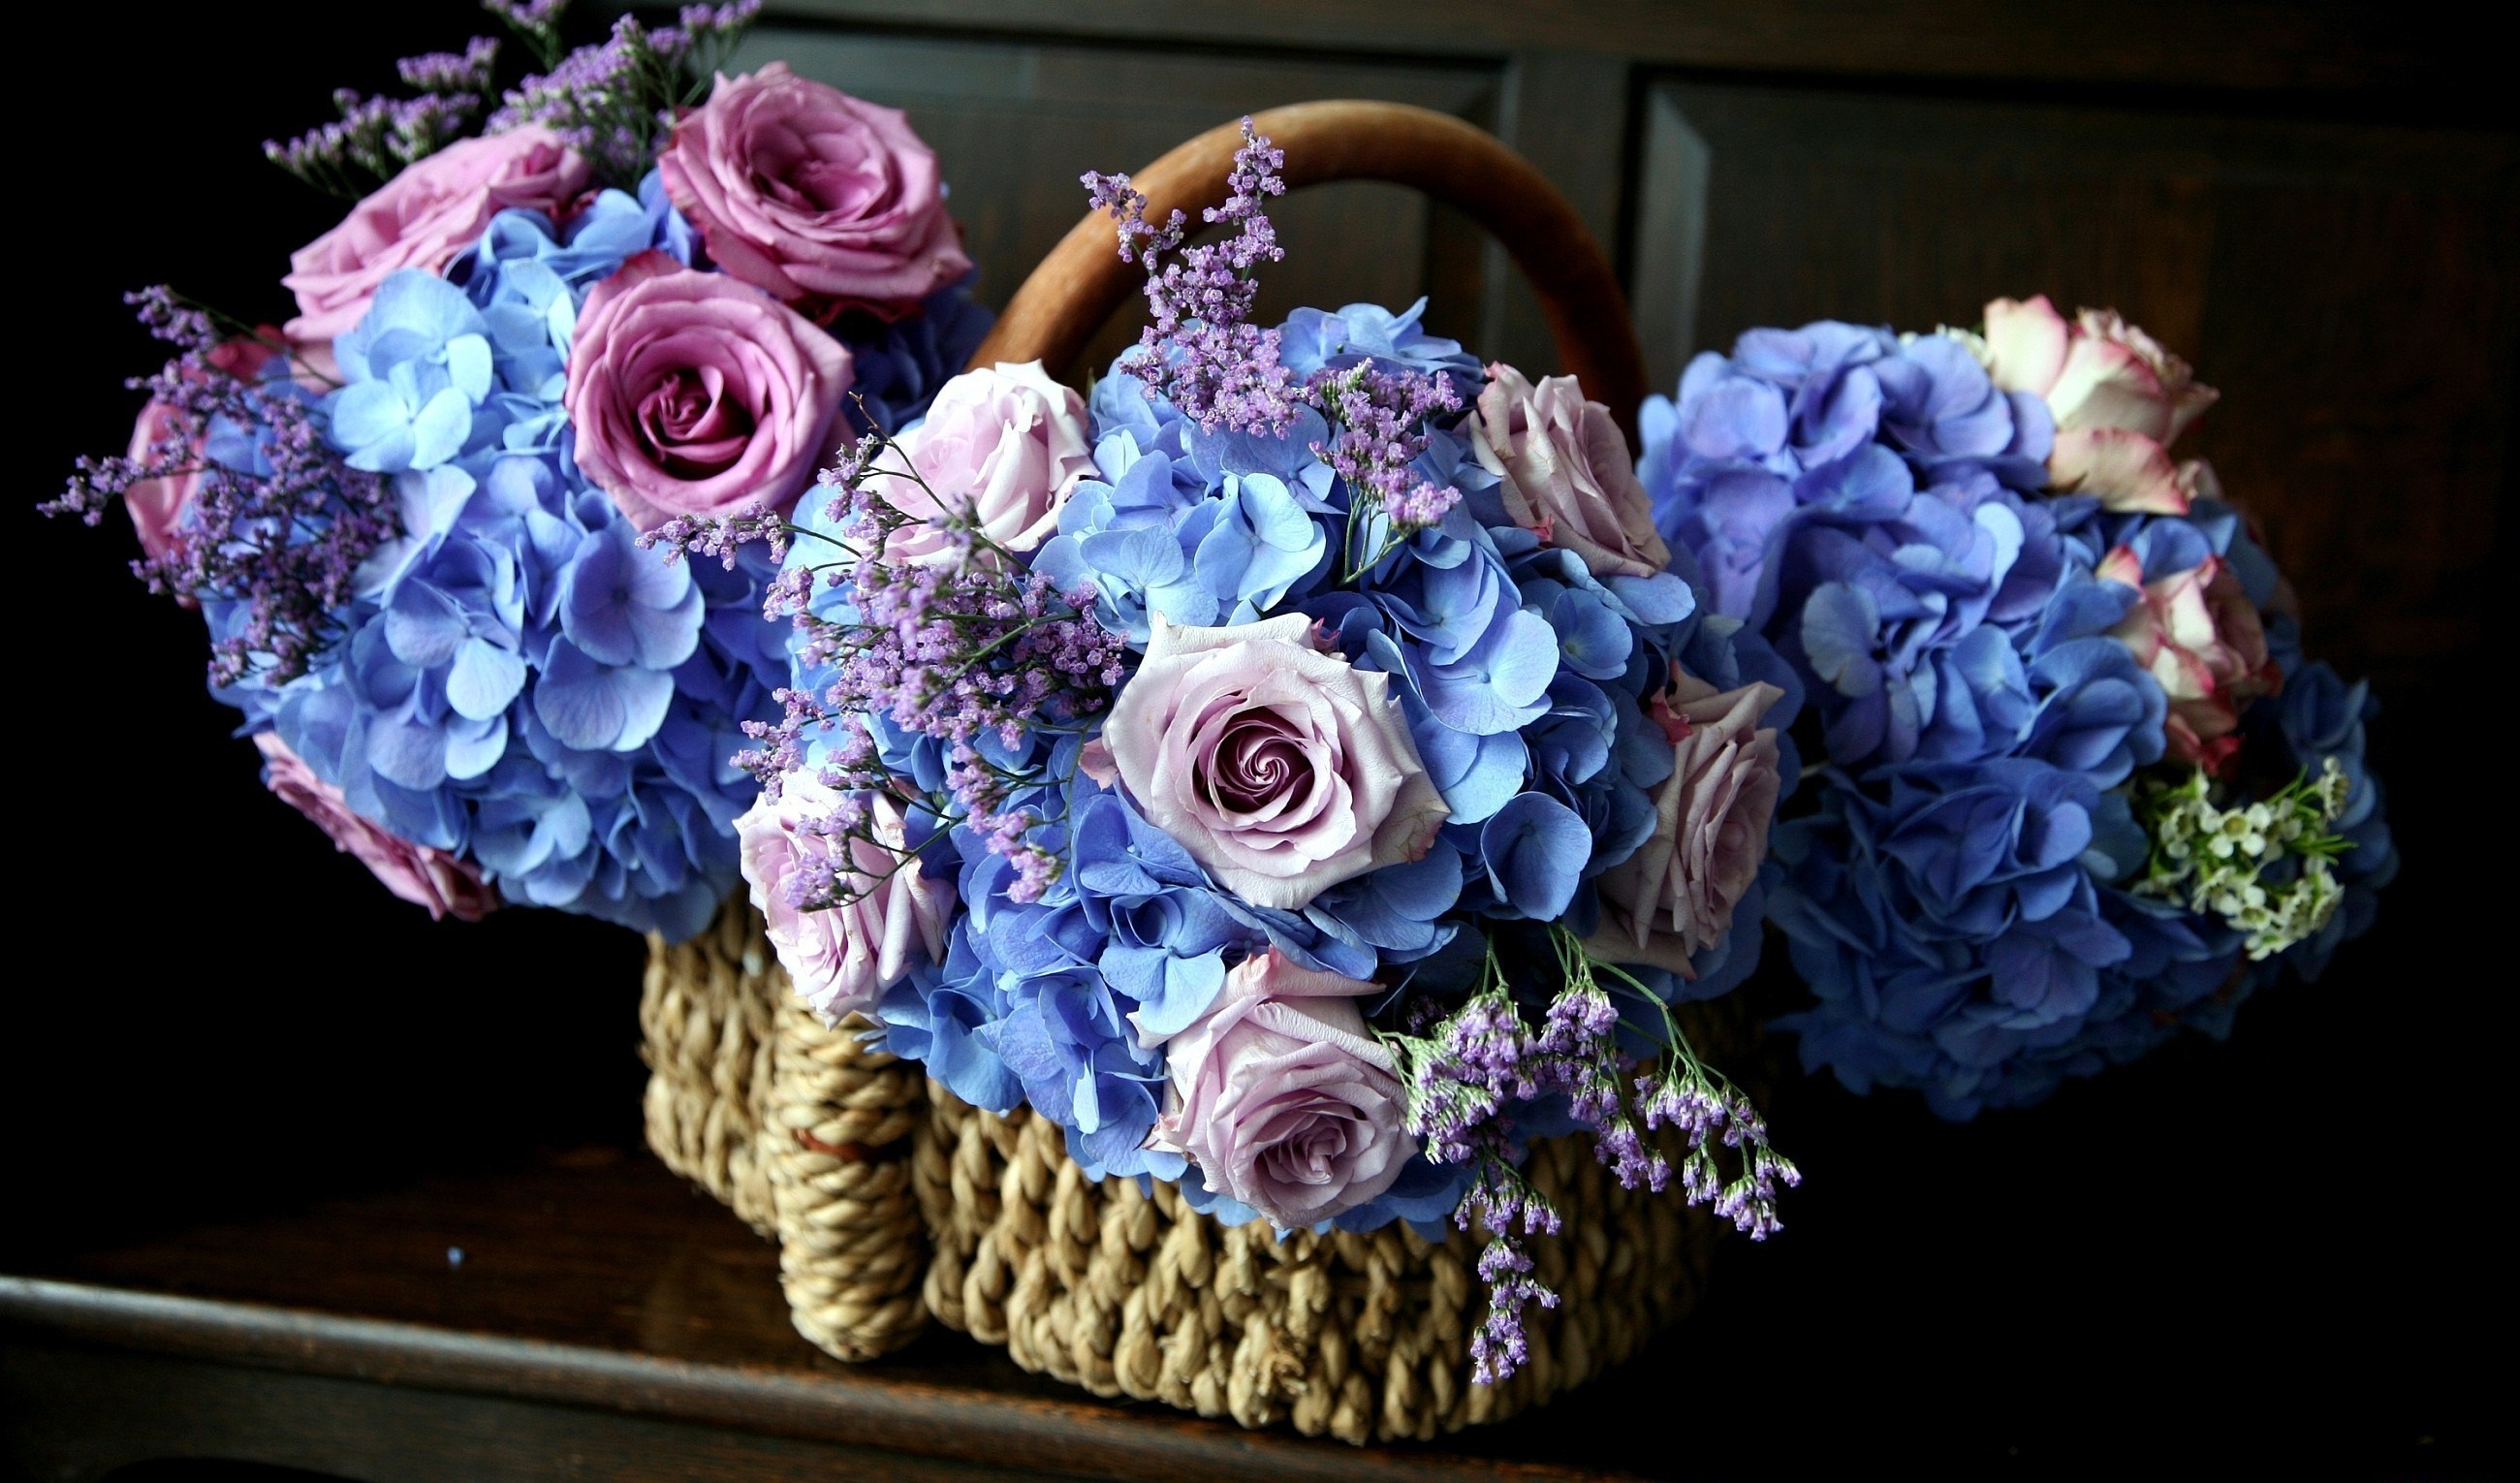 hydrangea, flowers, beauty, roses, bouquets, basket